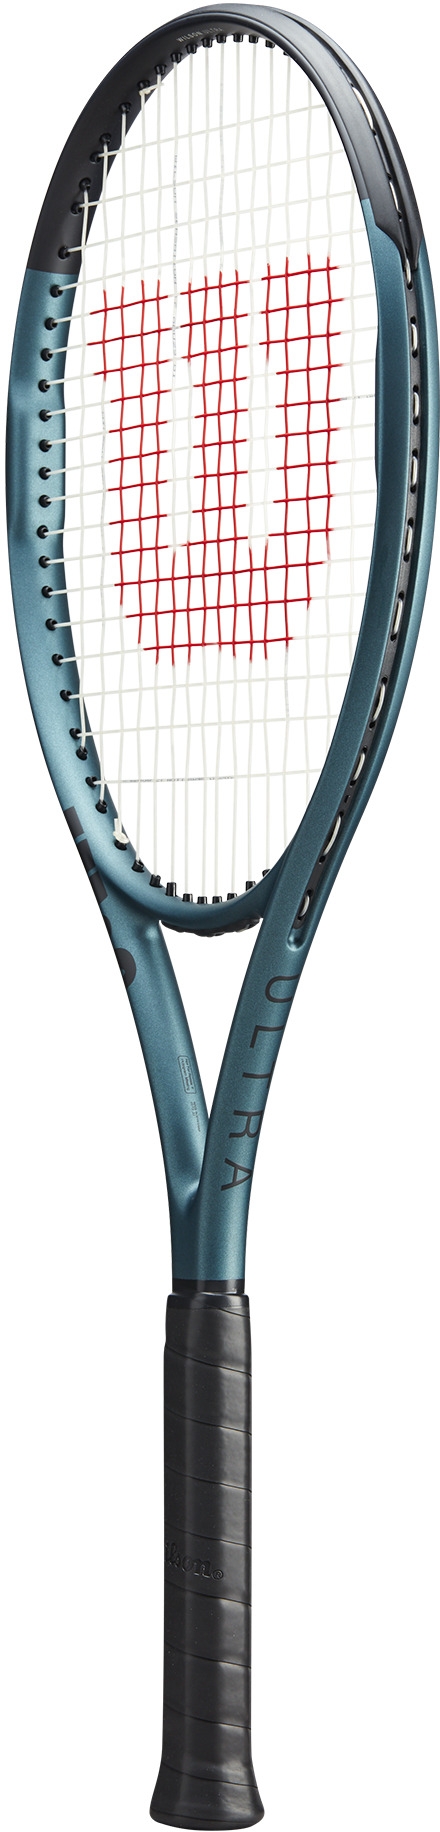 Performance tennis racquet